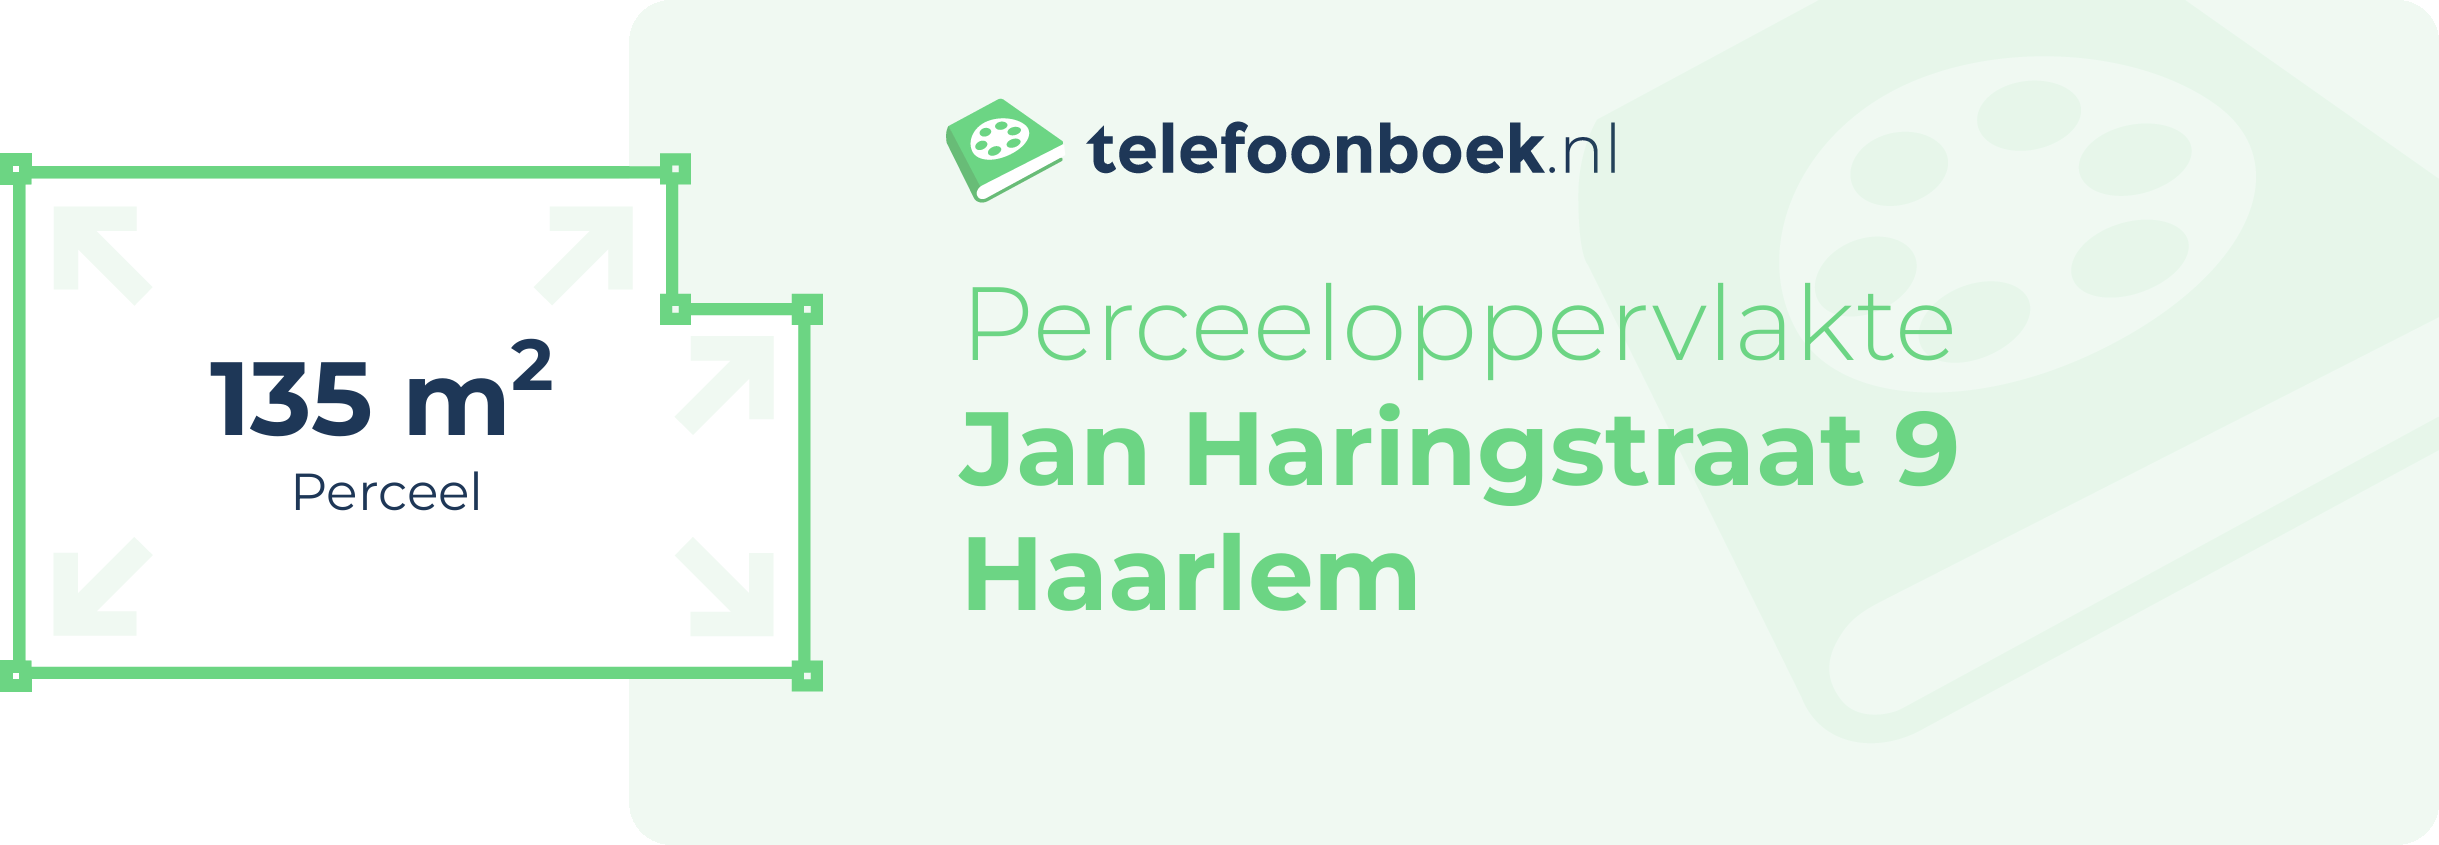 Perceeloppervlakte Jan Haringstraat 9 Haarlem